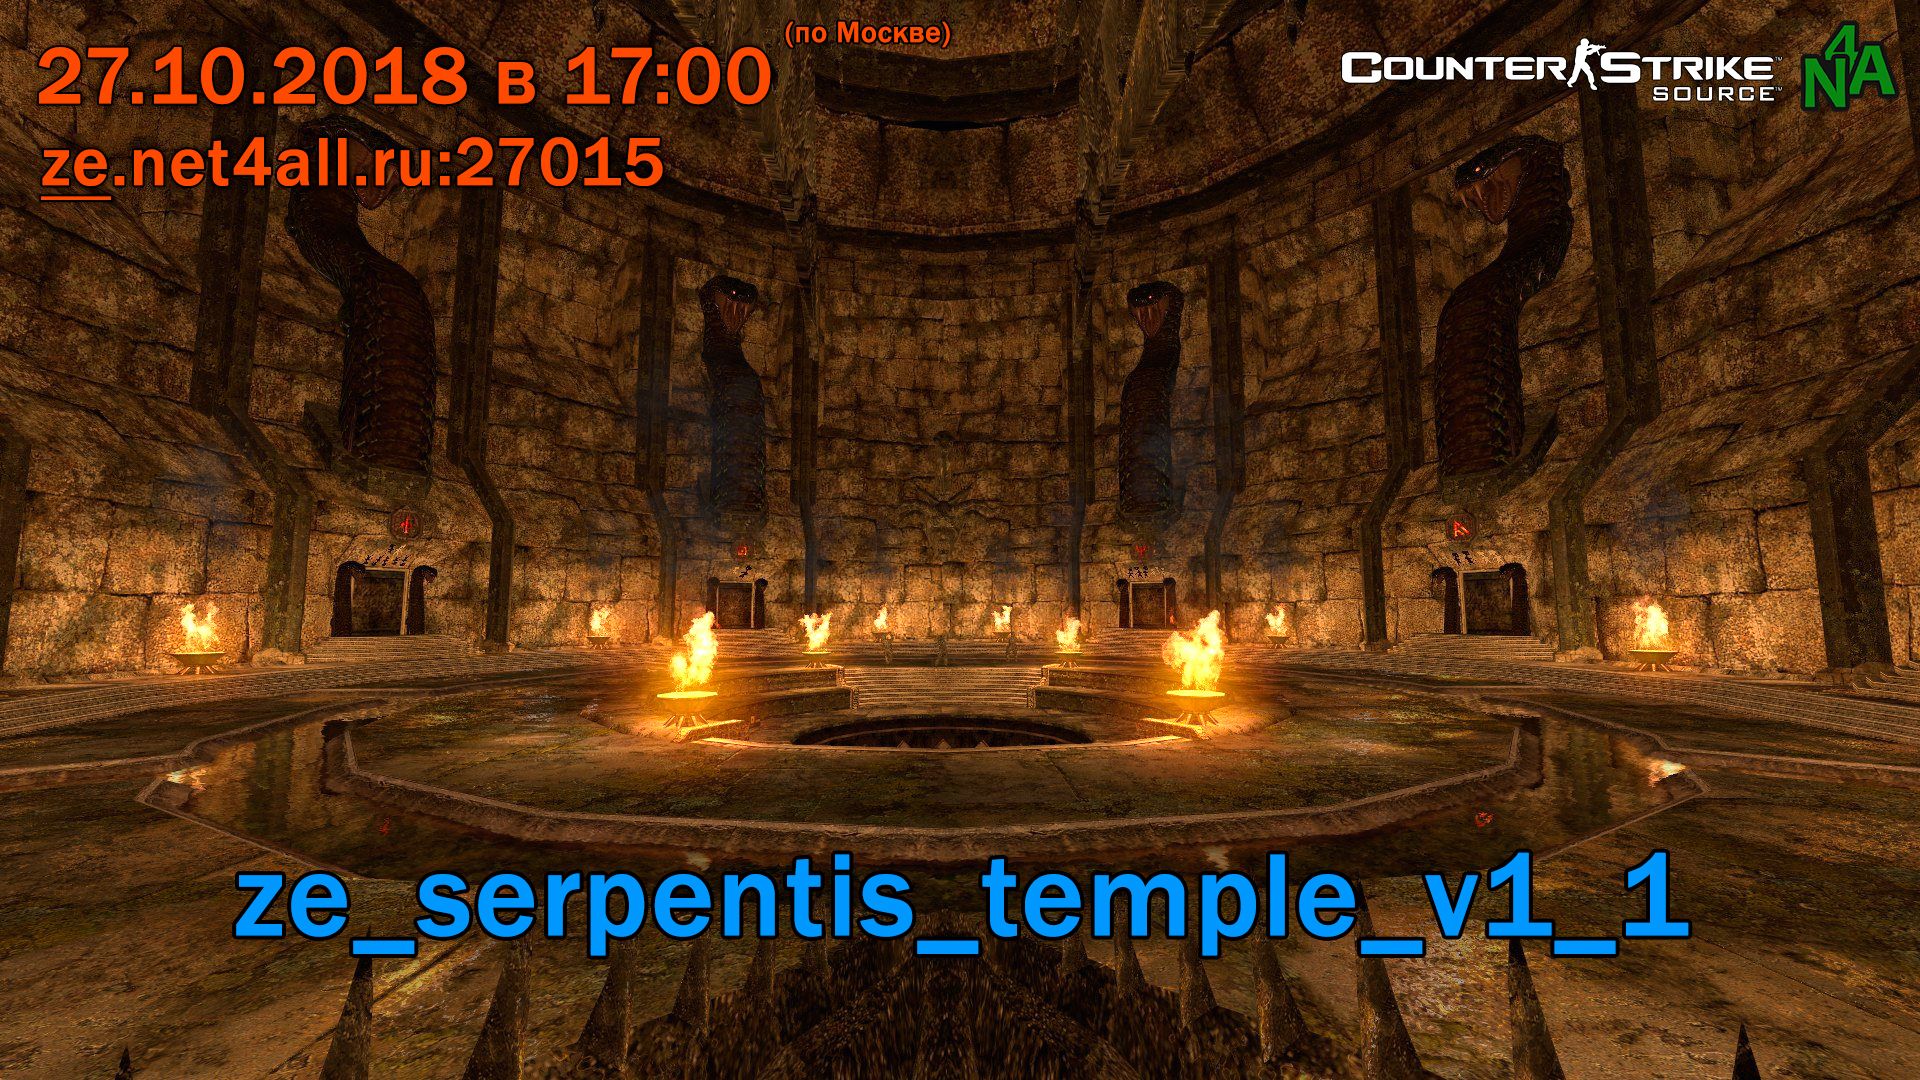 event_css_ze_serpentis_temple_v1_1.jpg